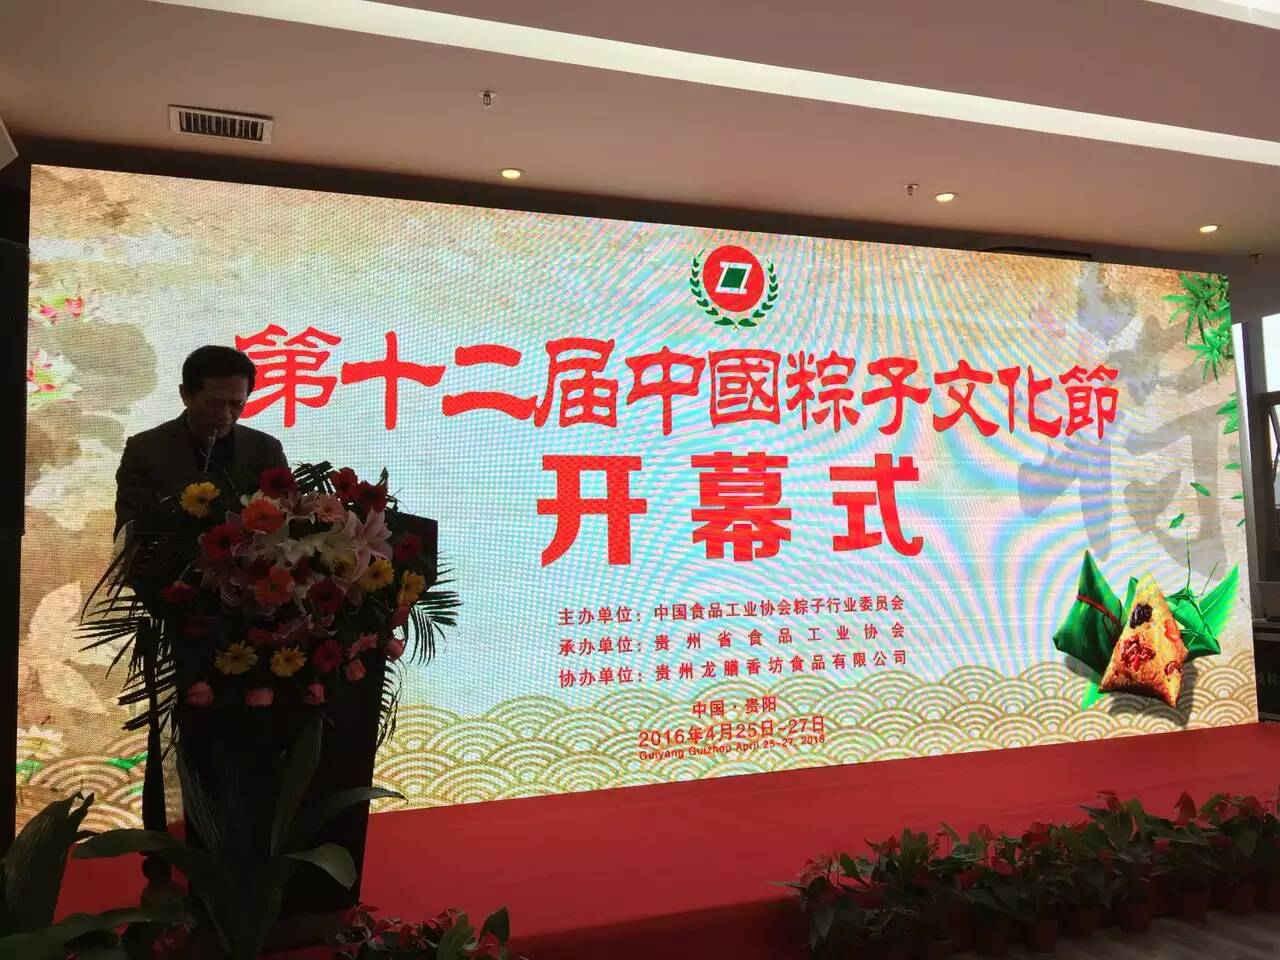 熱烈祝賀合口味粽子兩款產品榮獲第十二屆中國粽子文化節特等獎！